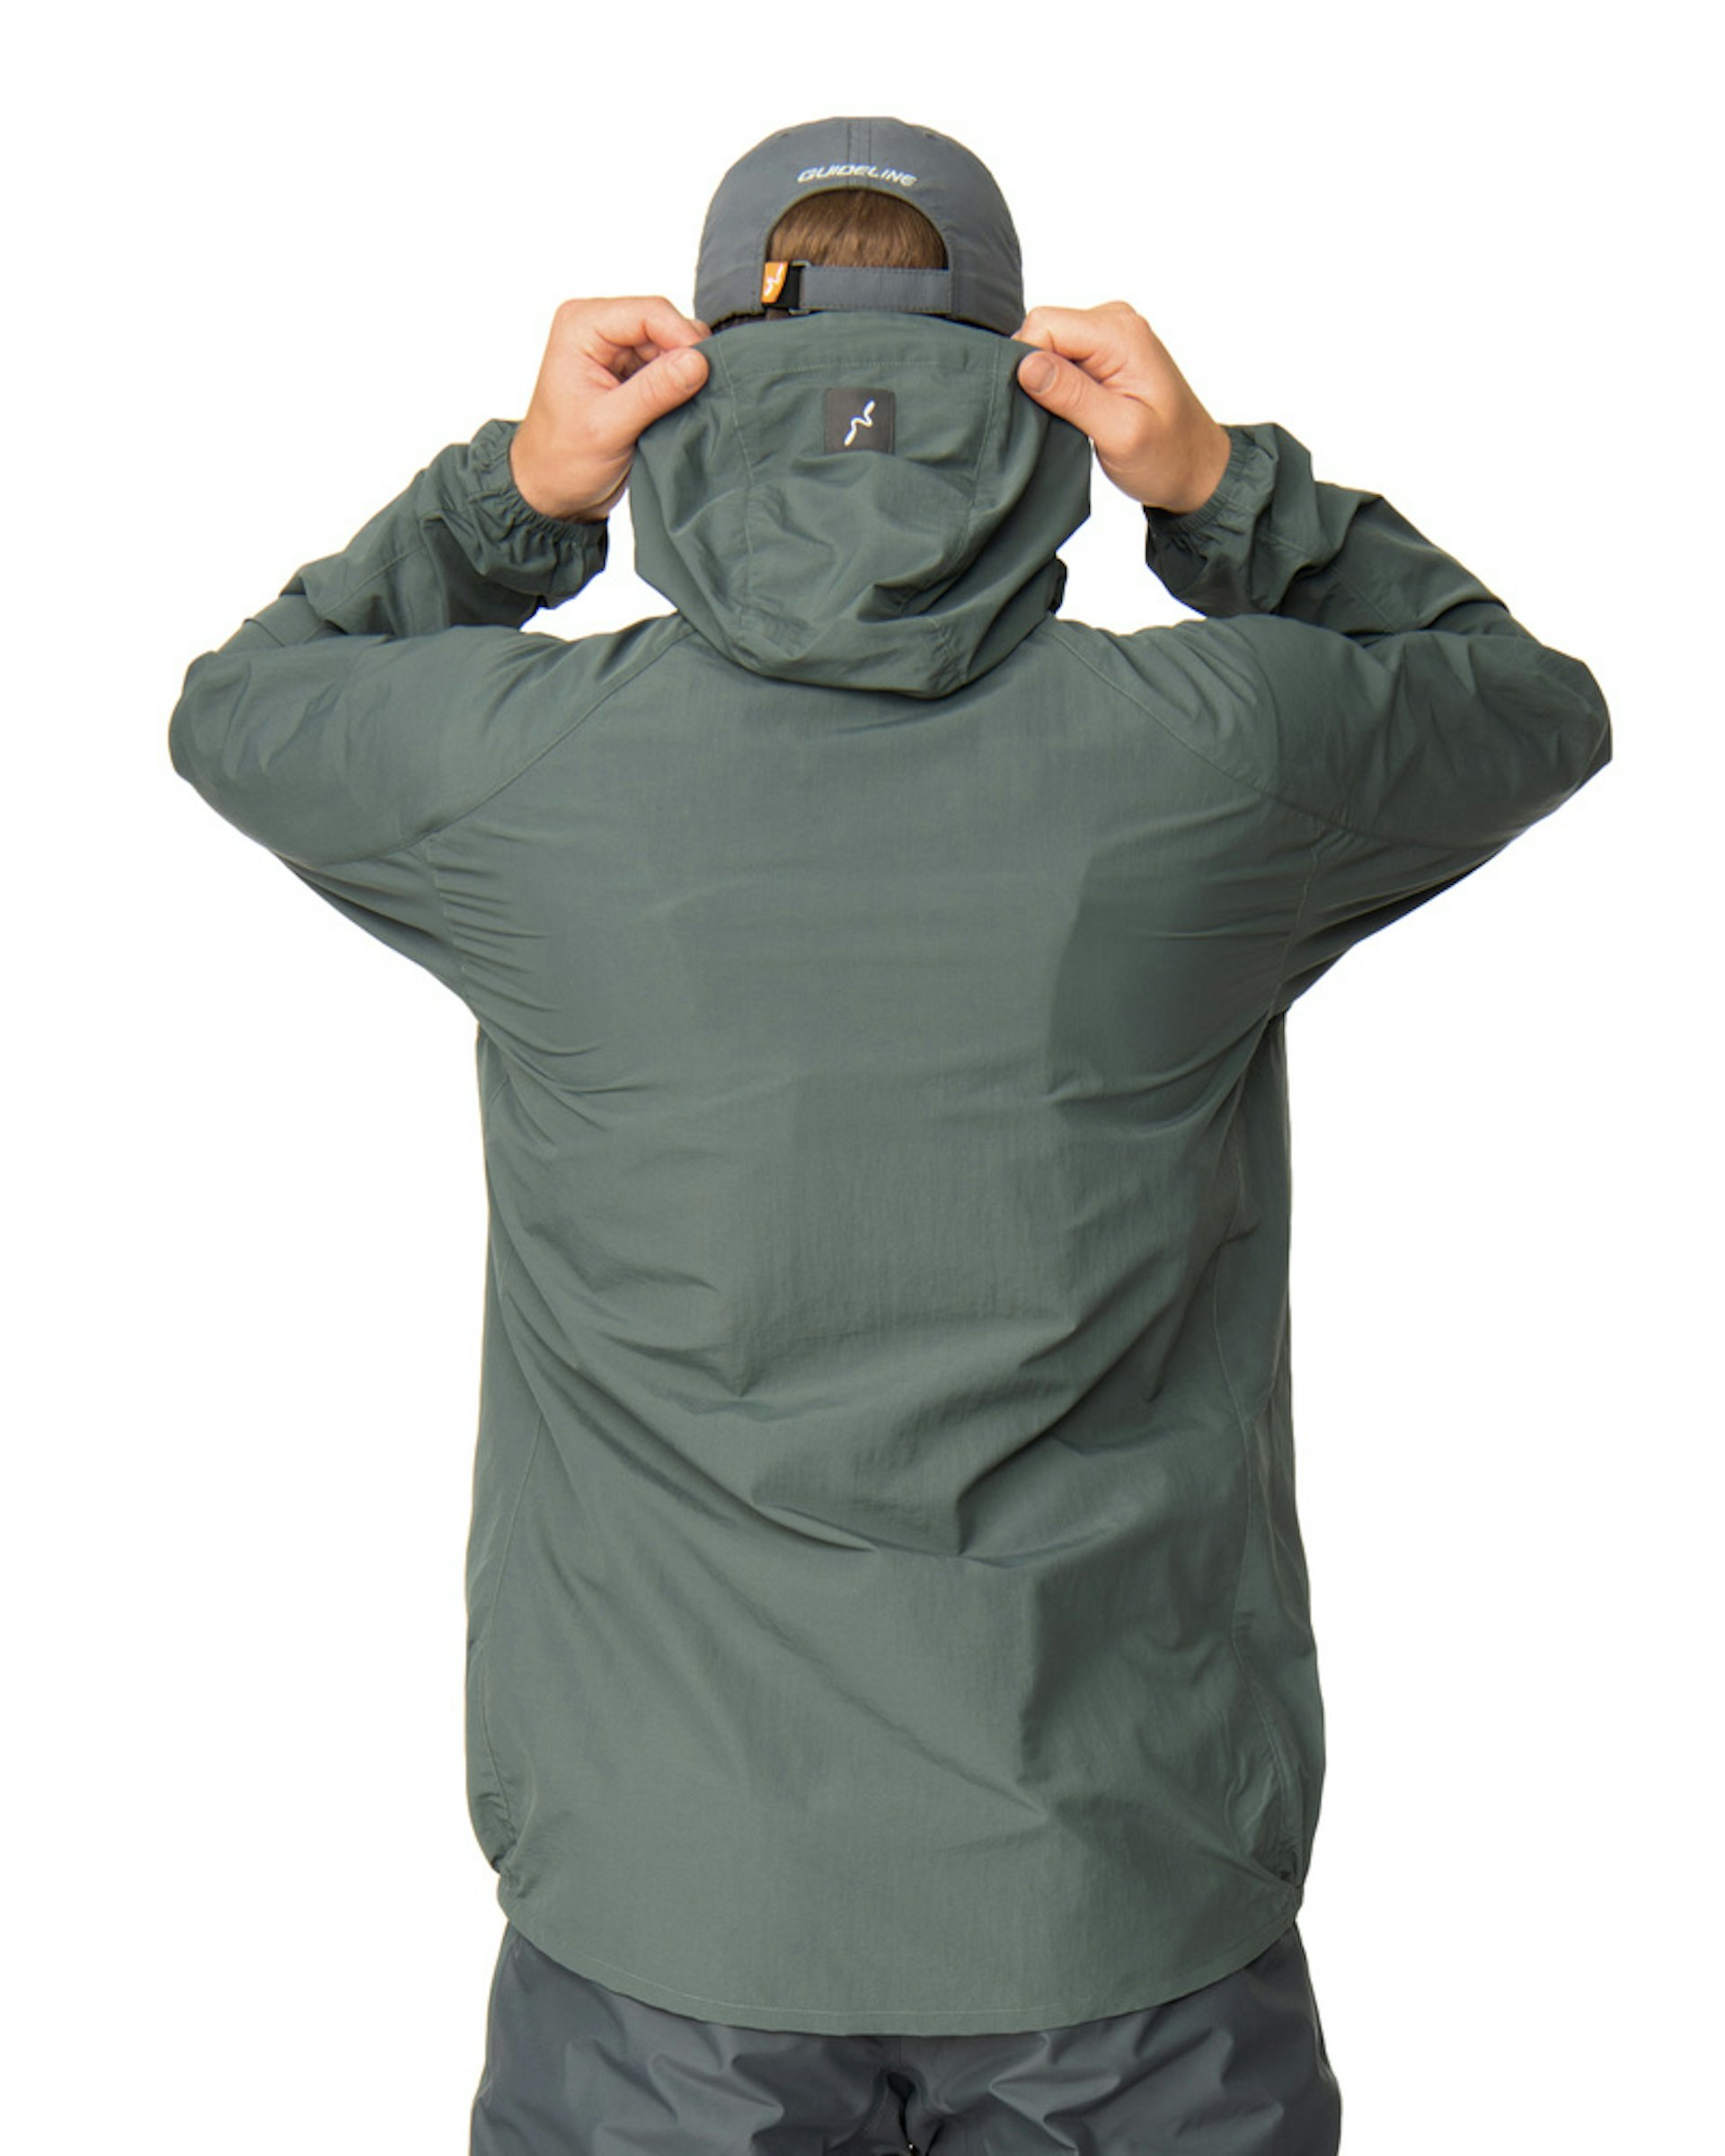 Jackets - Fly fishing jackets -Fishing jackets - Guideline jackets